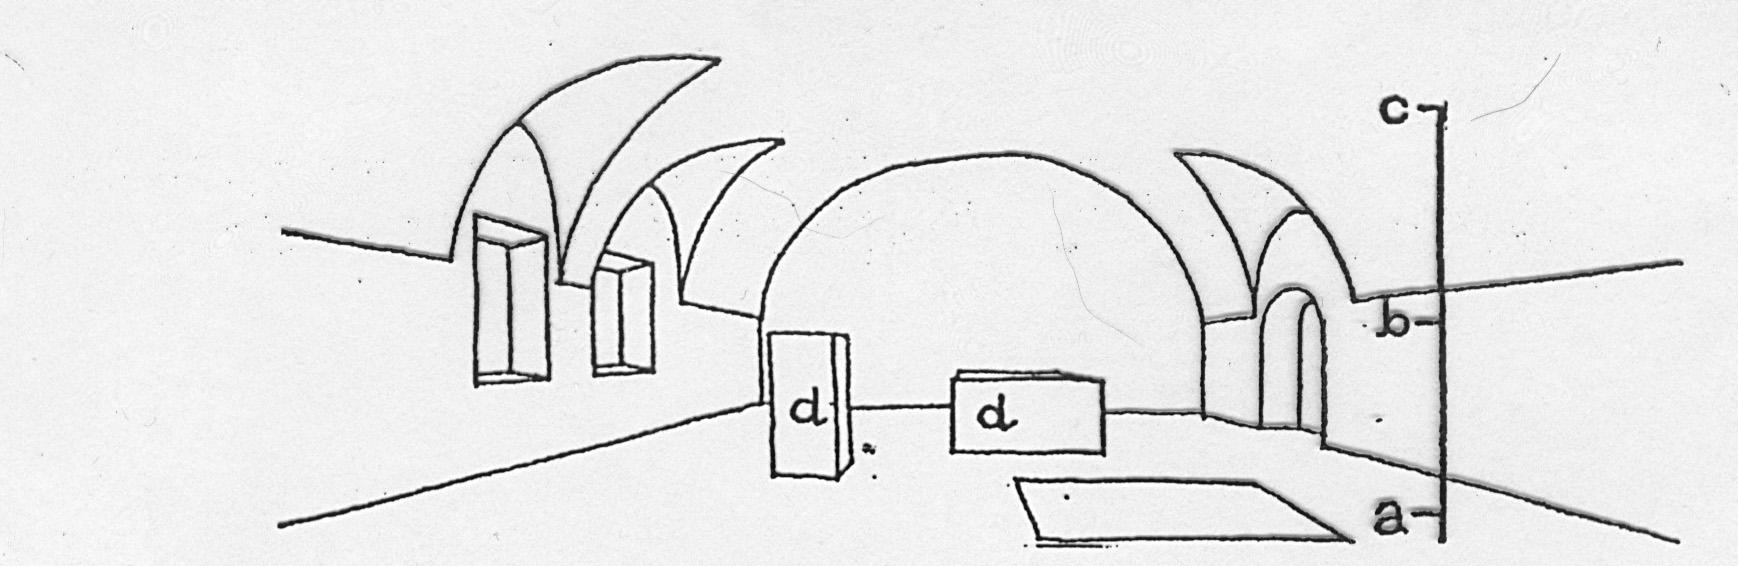 budowa wnętrza architektonicznego podłoga (dolna płaszczyzna pozioma) ściany (elementy i płaszczyzny pionowe) sklepienie (górna